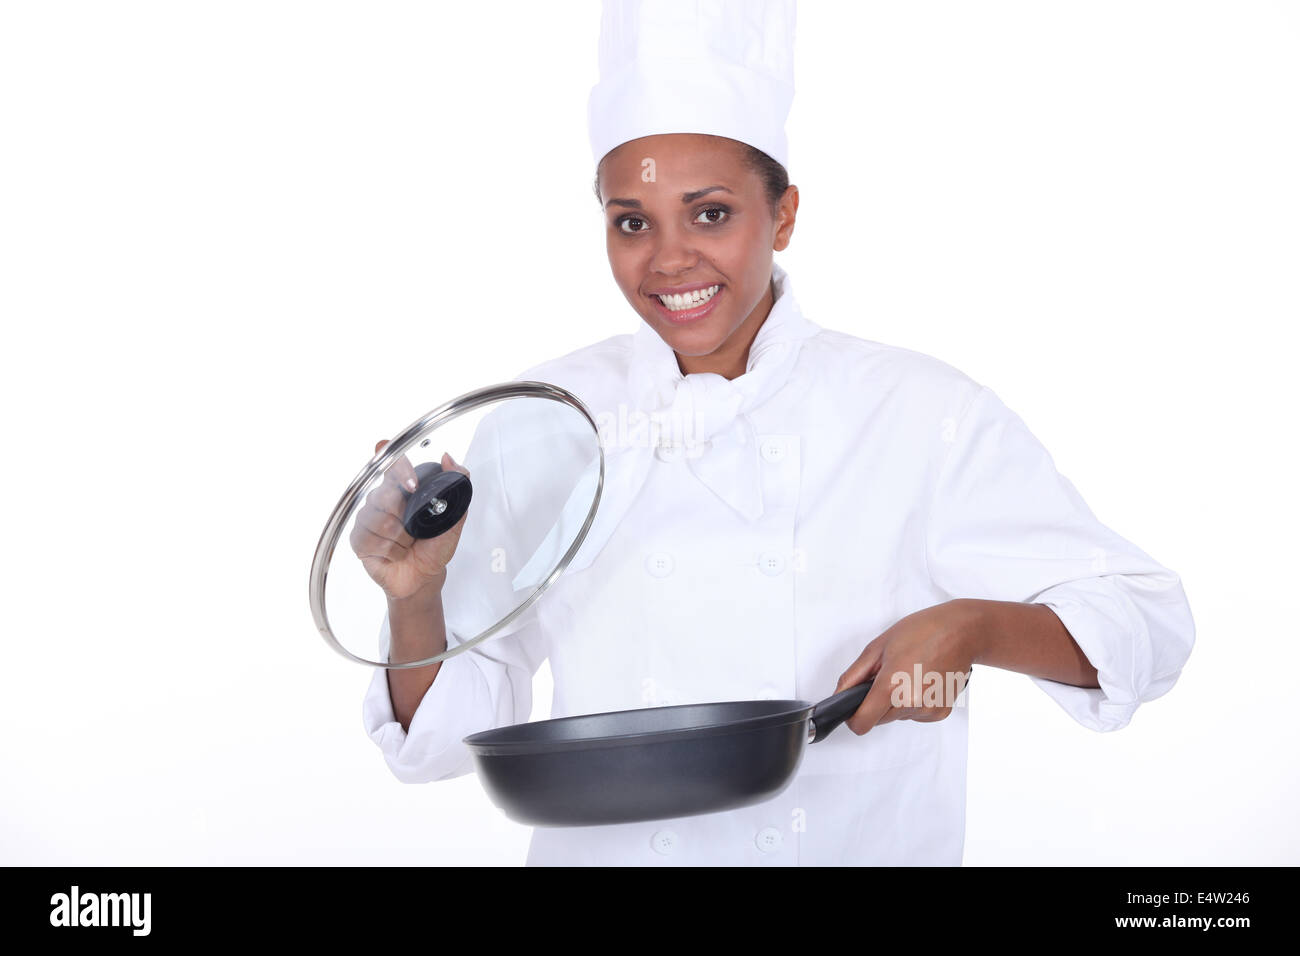 Chef femenina exhibe una sartén Foto de stock